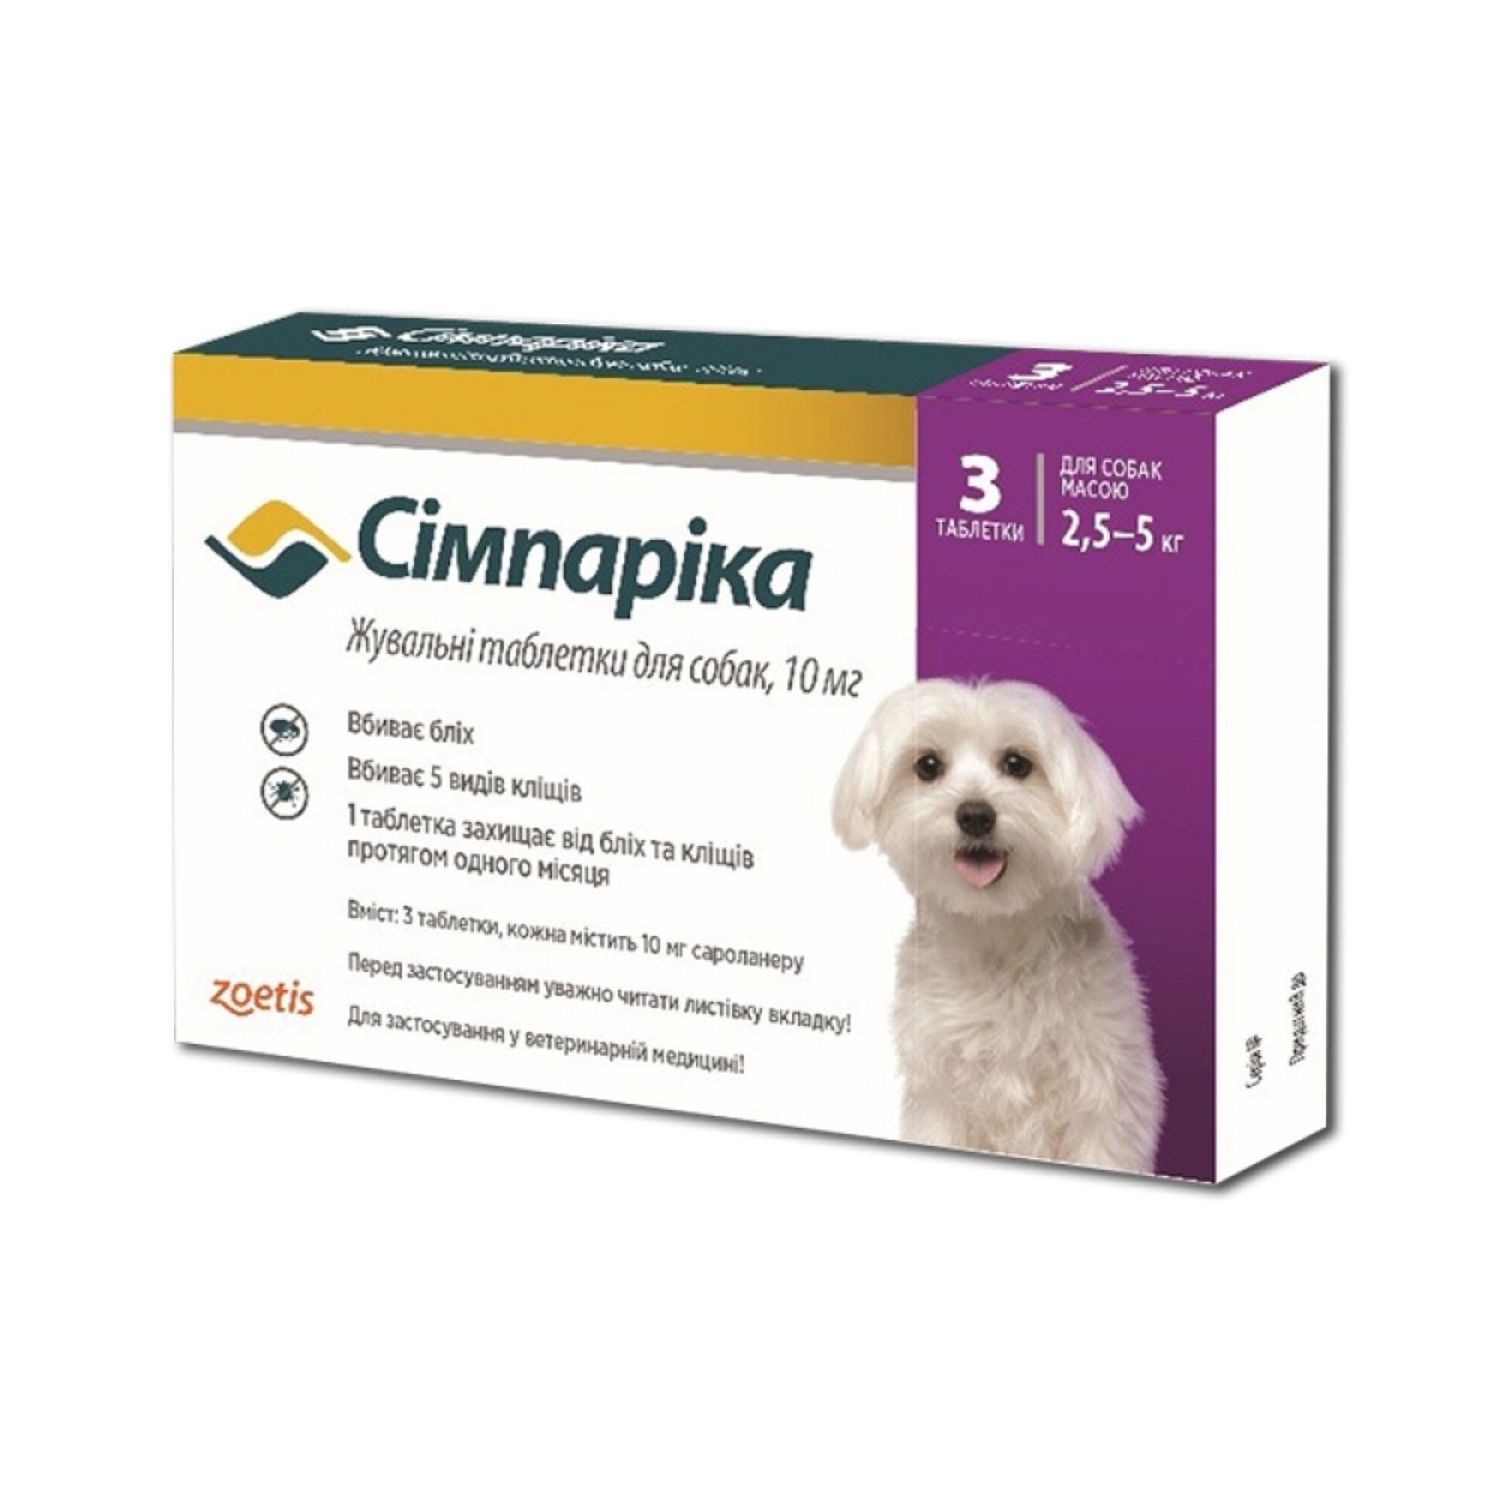 Жевательные таблетки Simparica 10 мг от блох и клещей для собак весом от 2.5 до 5 кг 3 шт